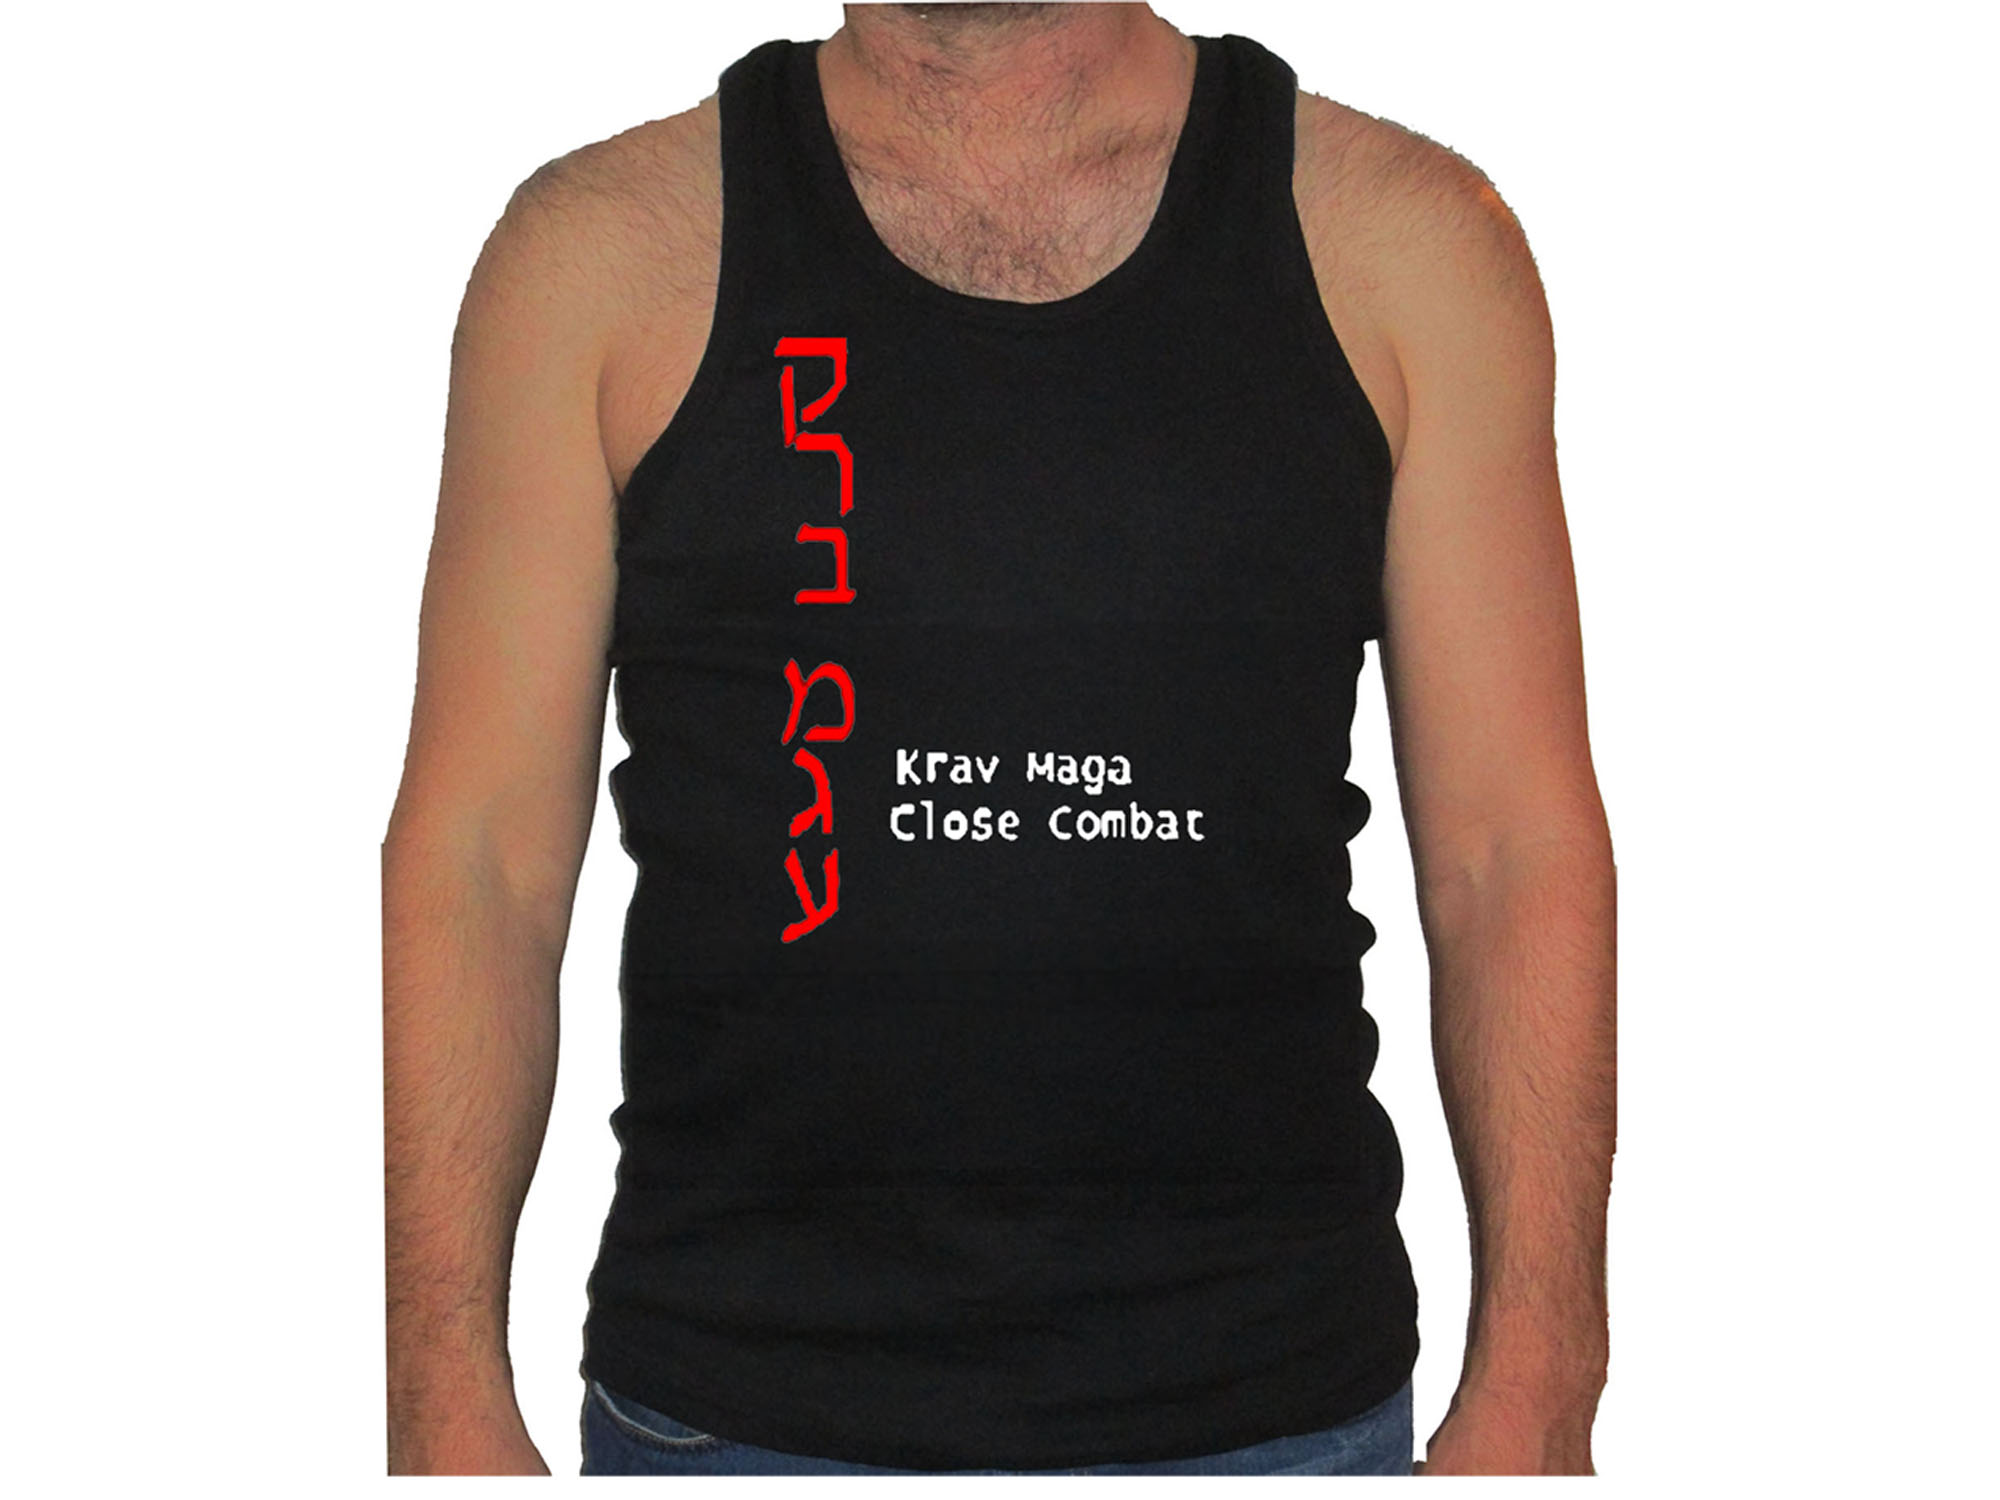 Krav Maga sleeveless shirt-ideal for gym 2